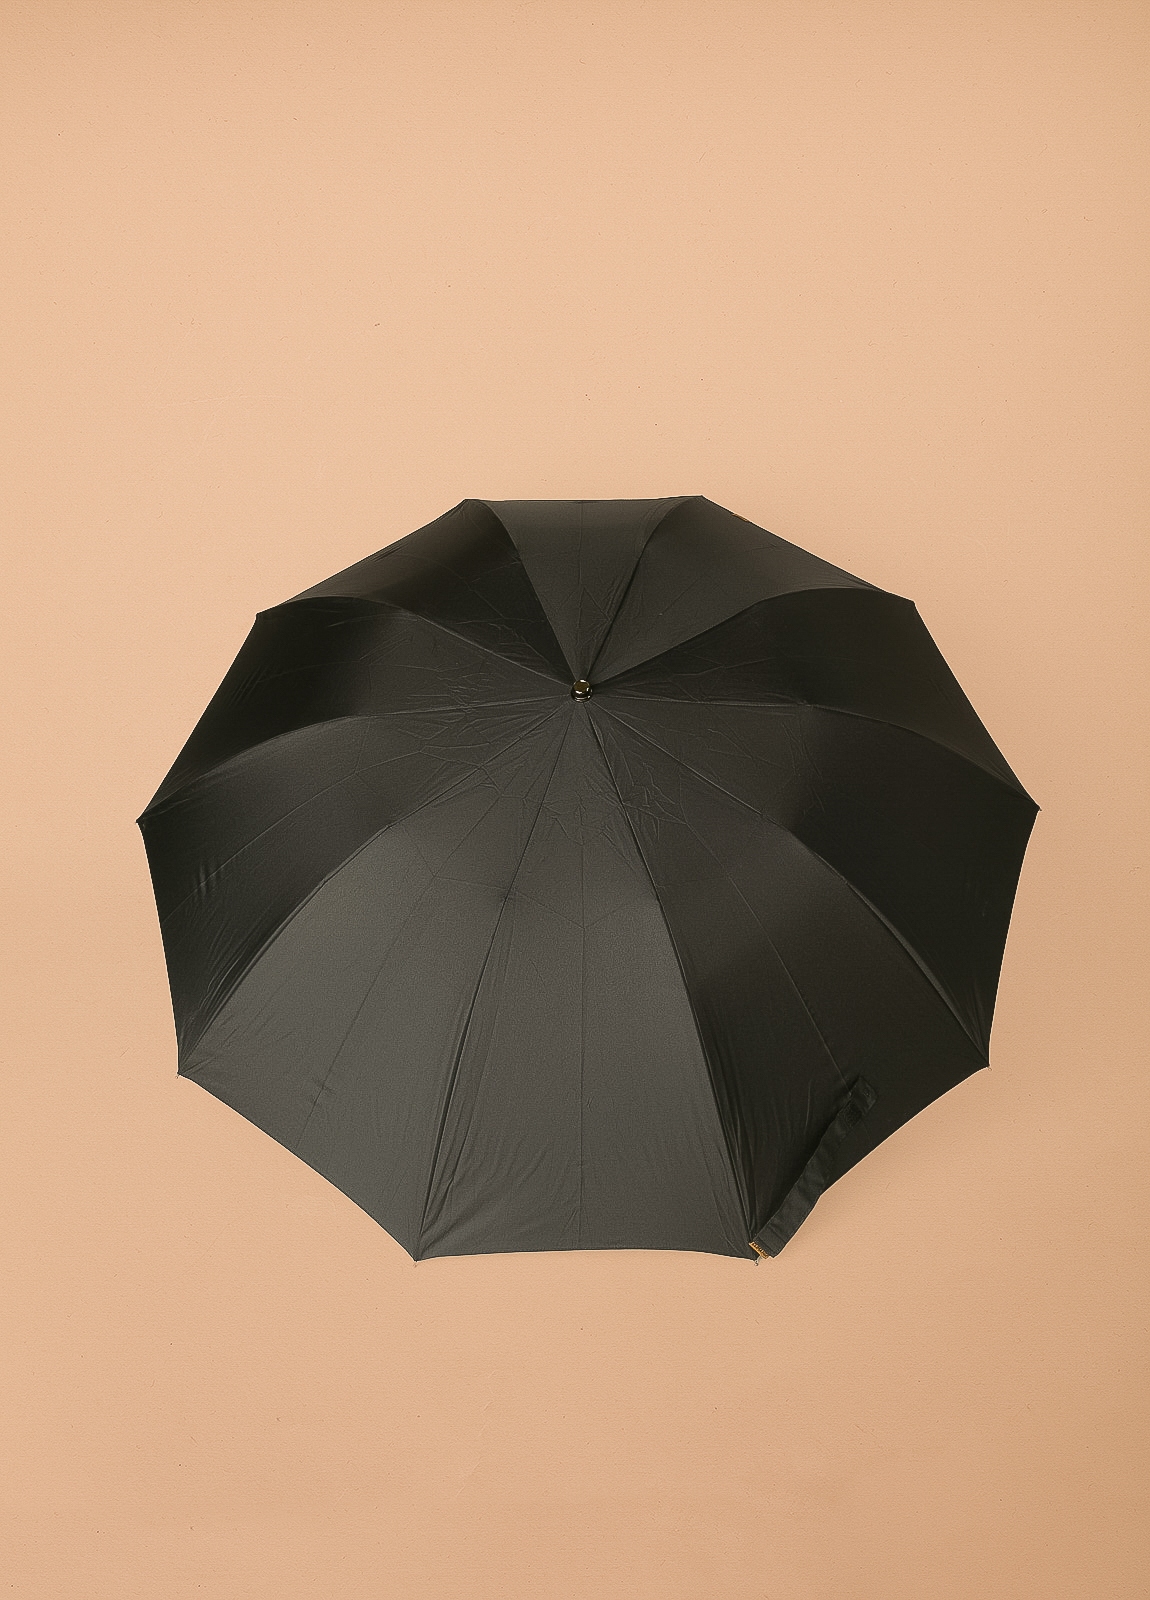 Paraguas FUREST COLECCIÓN plegable negro con puño de madera. - Ítem2